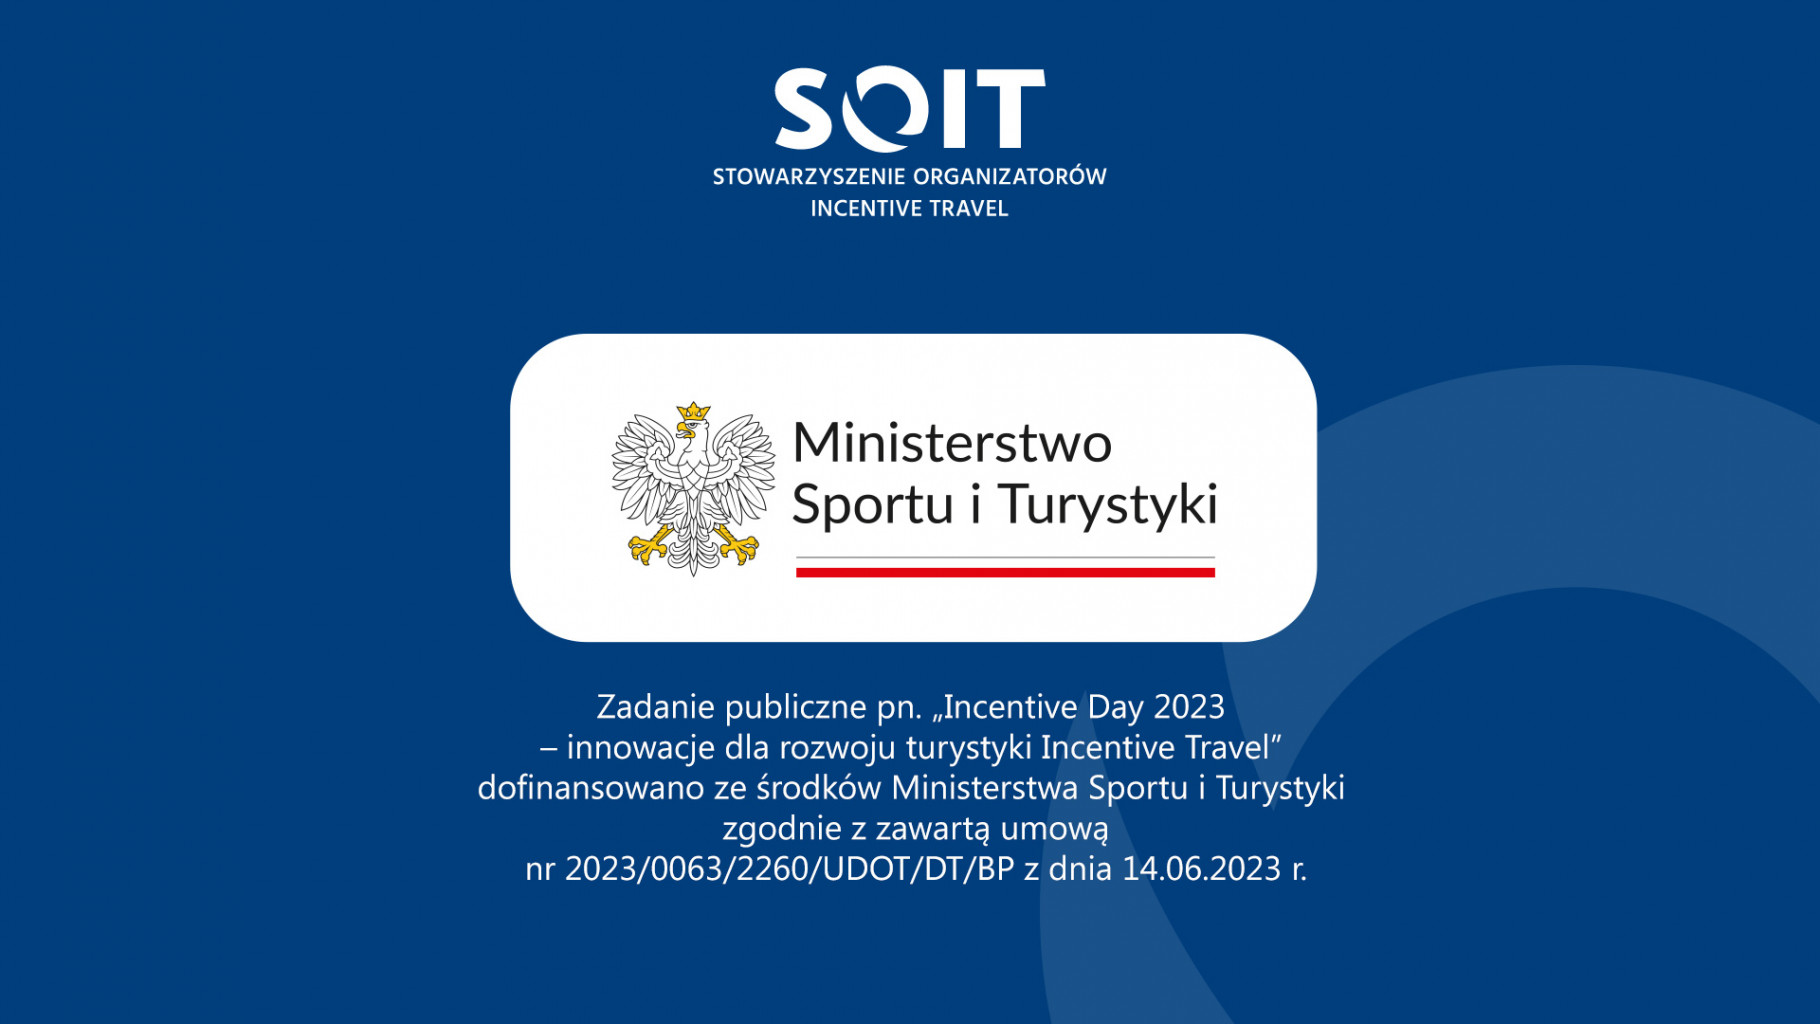 ministerstwo sportu i turystyki